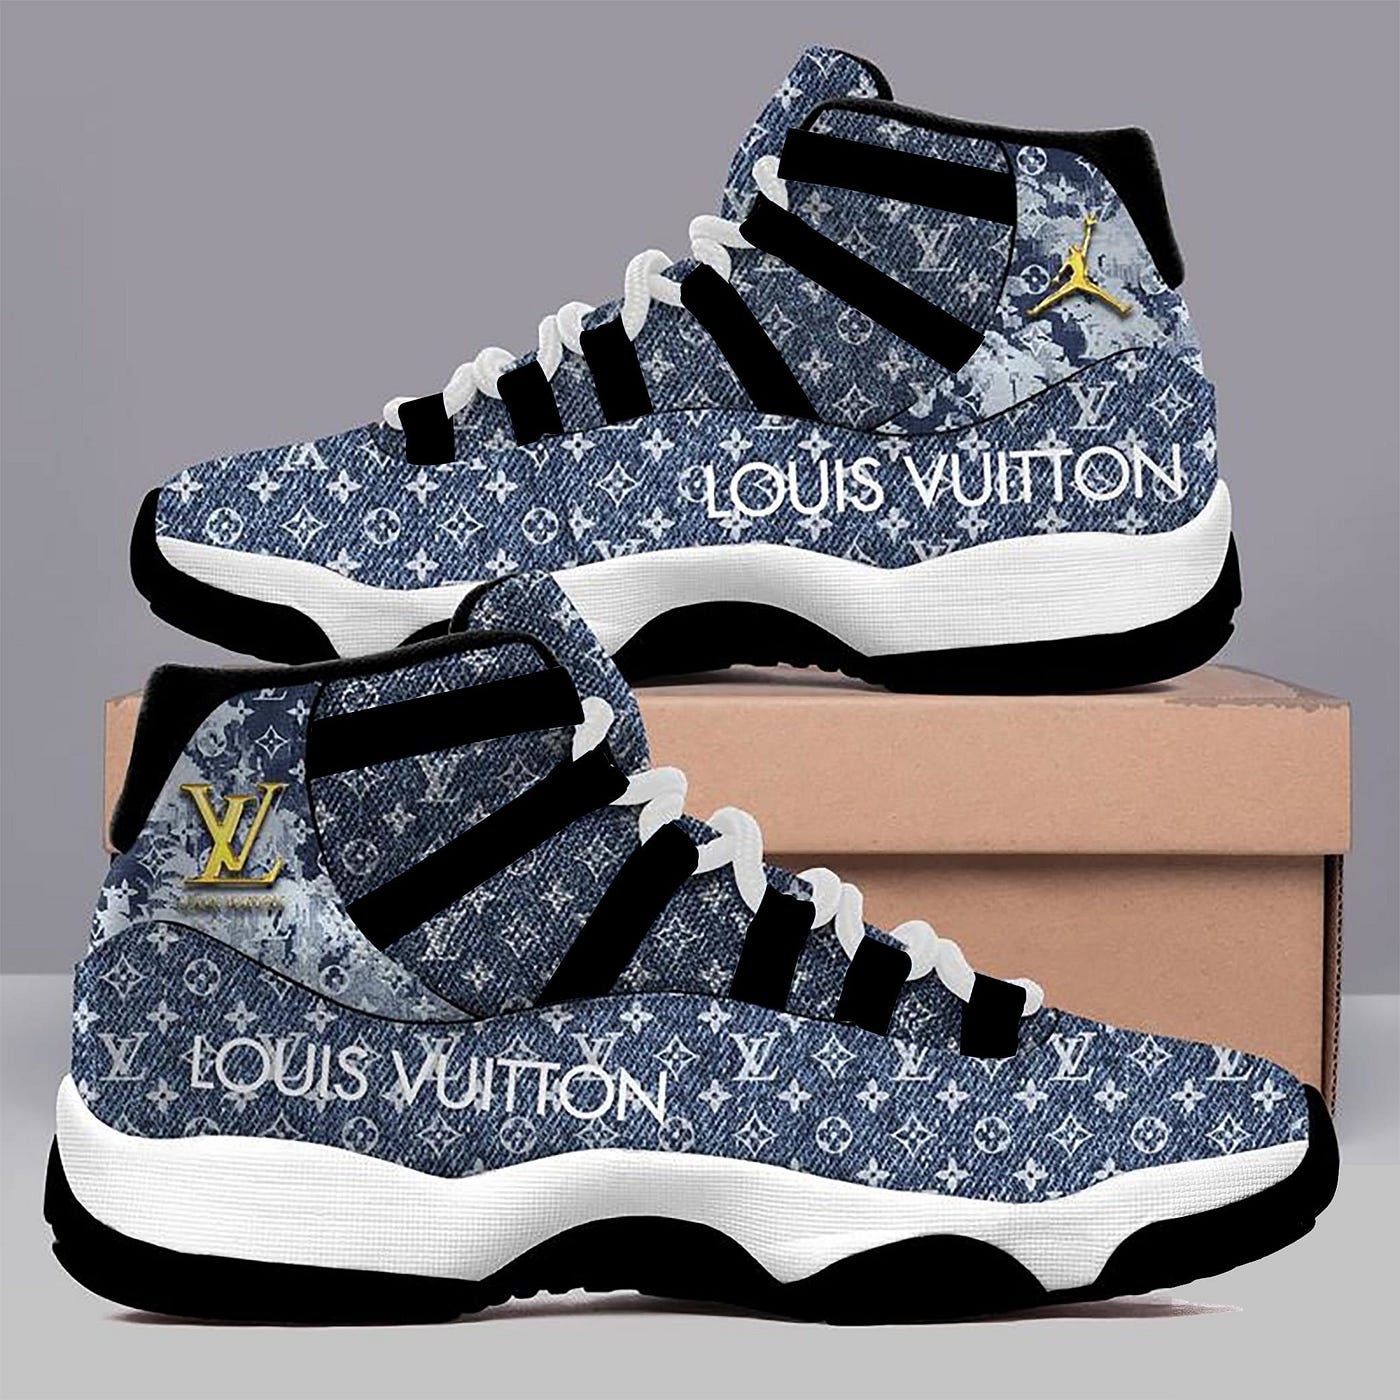 Louis Vuitton Denim Monogram Air Jordan 11 Sneakers Shoes Hot Lv